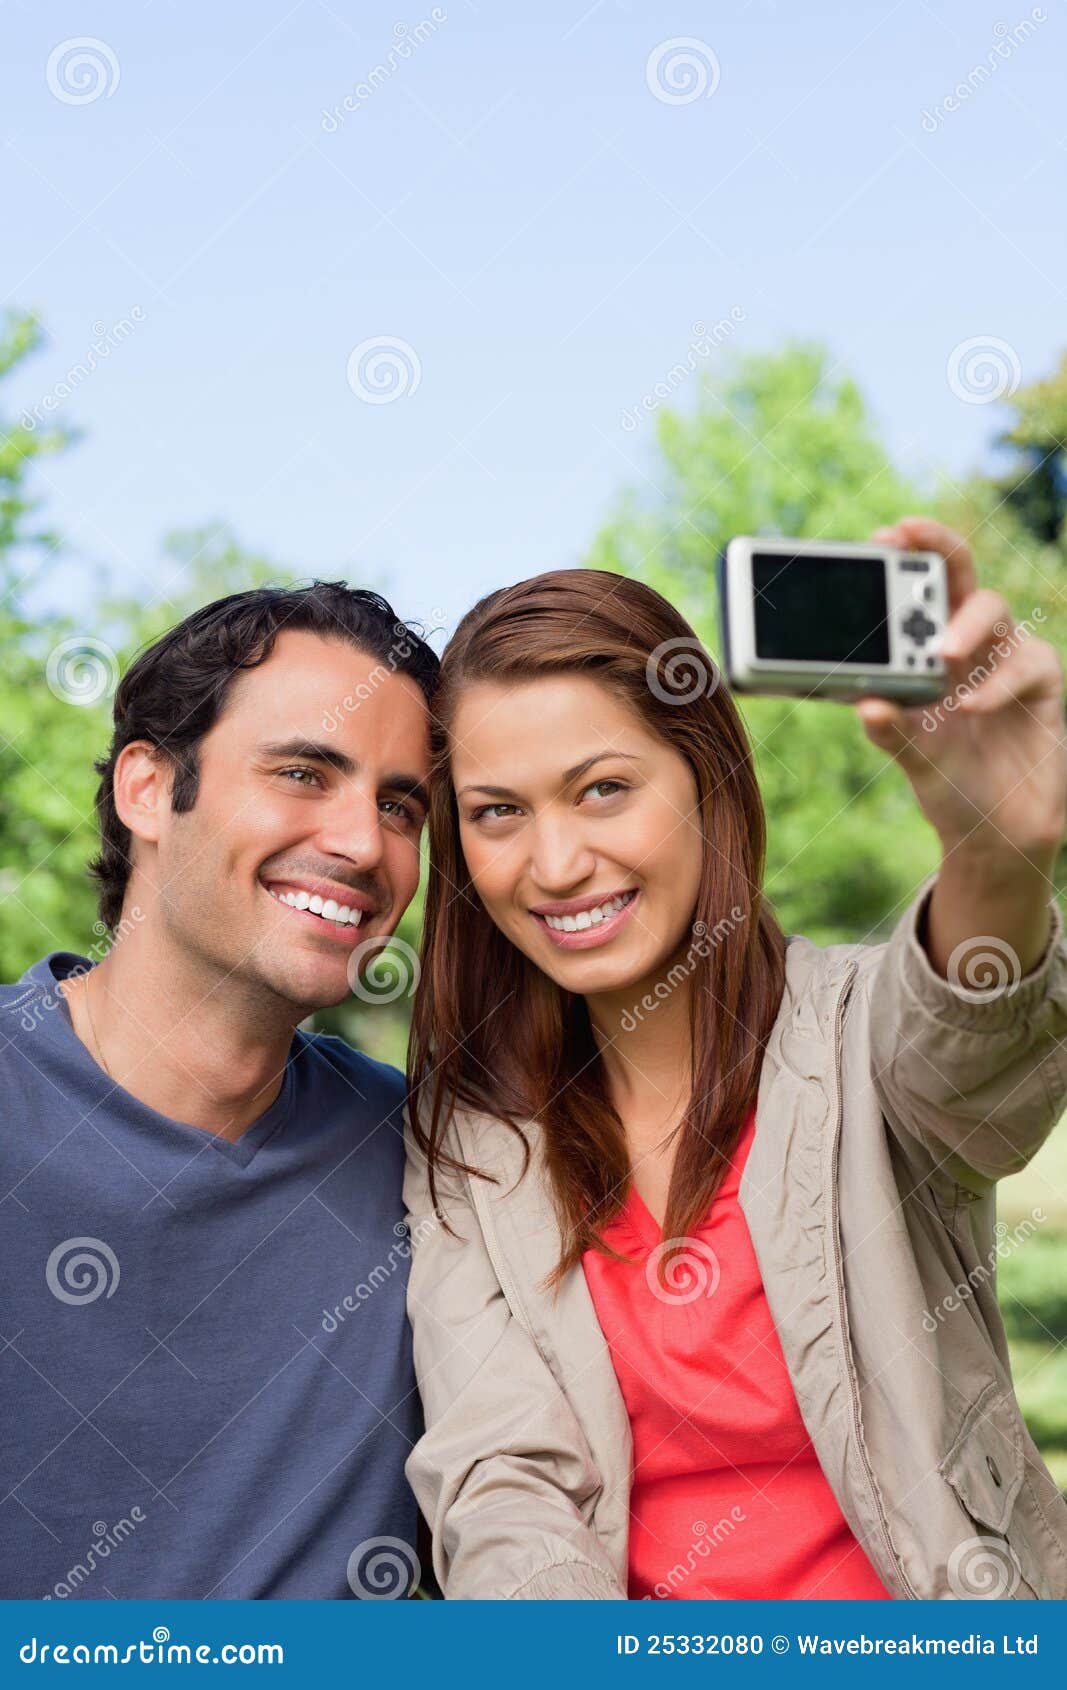 Mulher e seu amigo que olham para sua câmera para uma imagem de. A mulher guardara uma câmera nos braços alcança para tomar uma imagem de seu amigo e de ela mesma em um ambiente aberto da pastagem